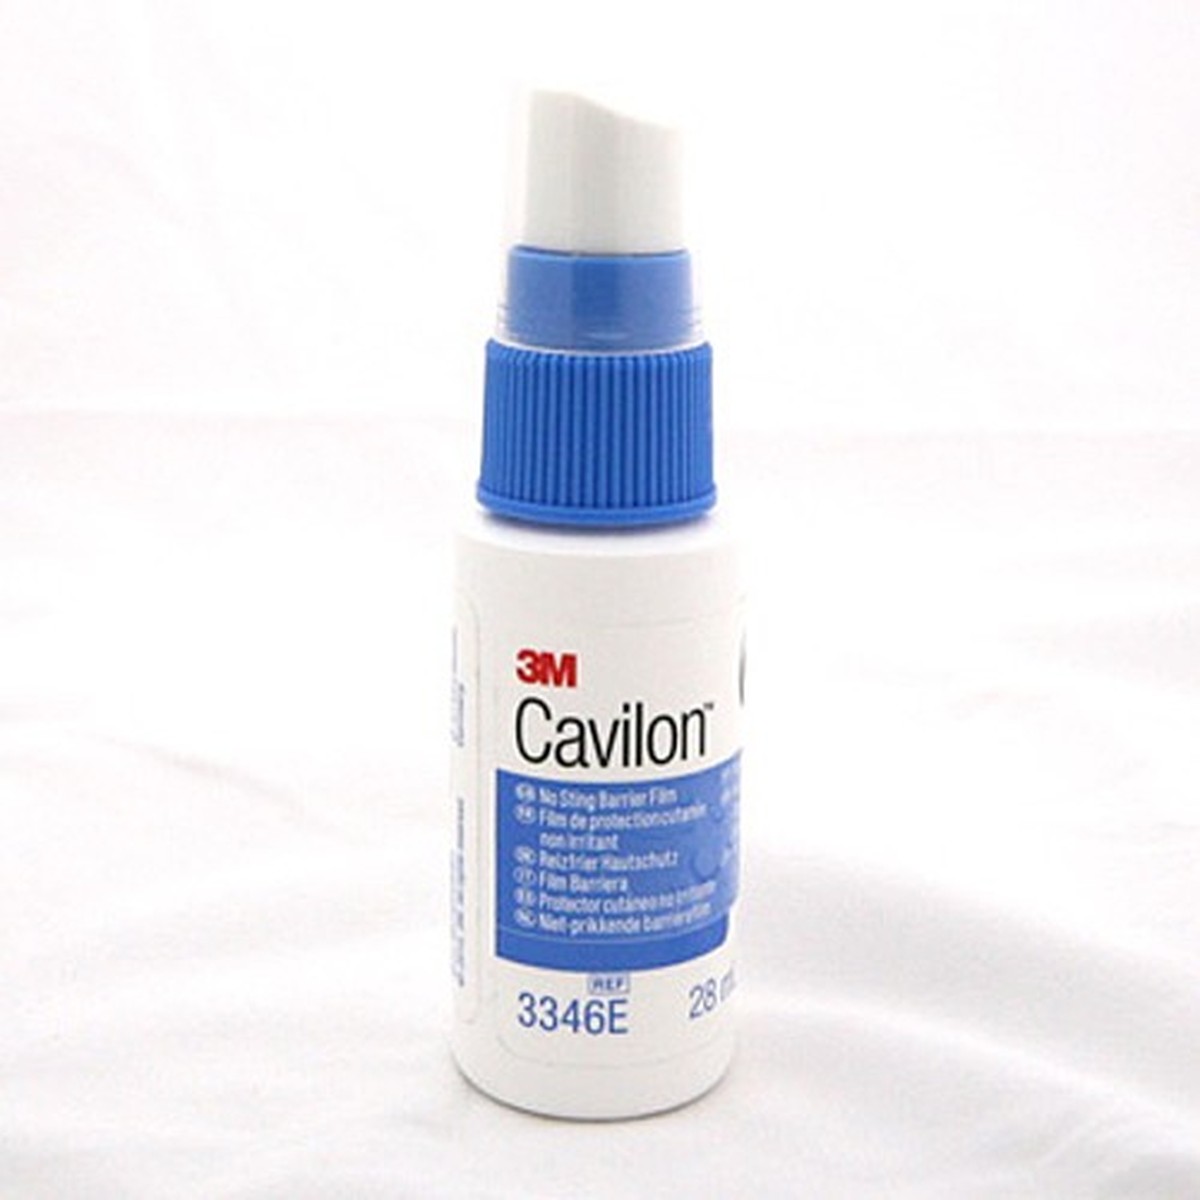 Foto do produto Cavilon Spray 28ml 3M